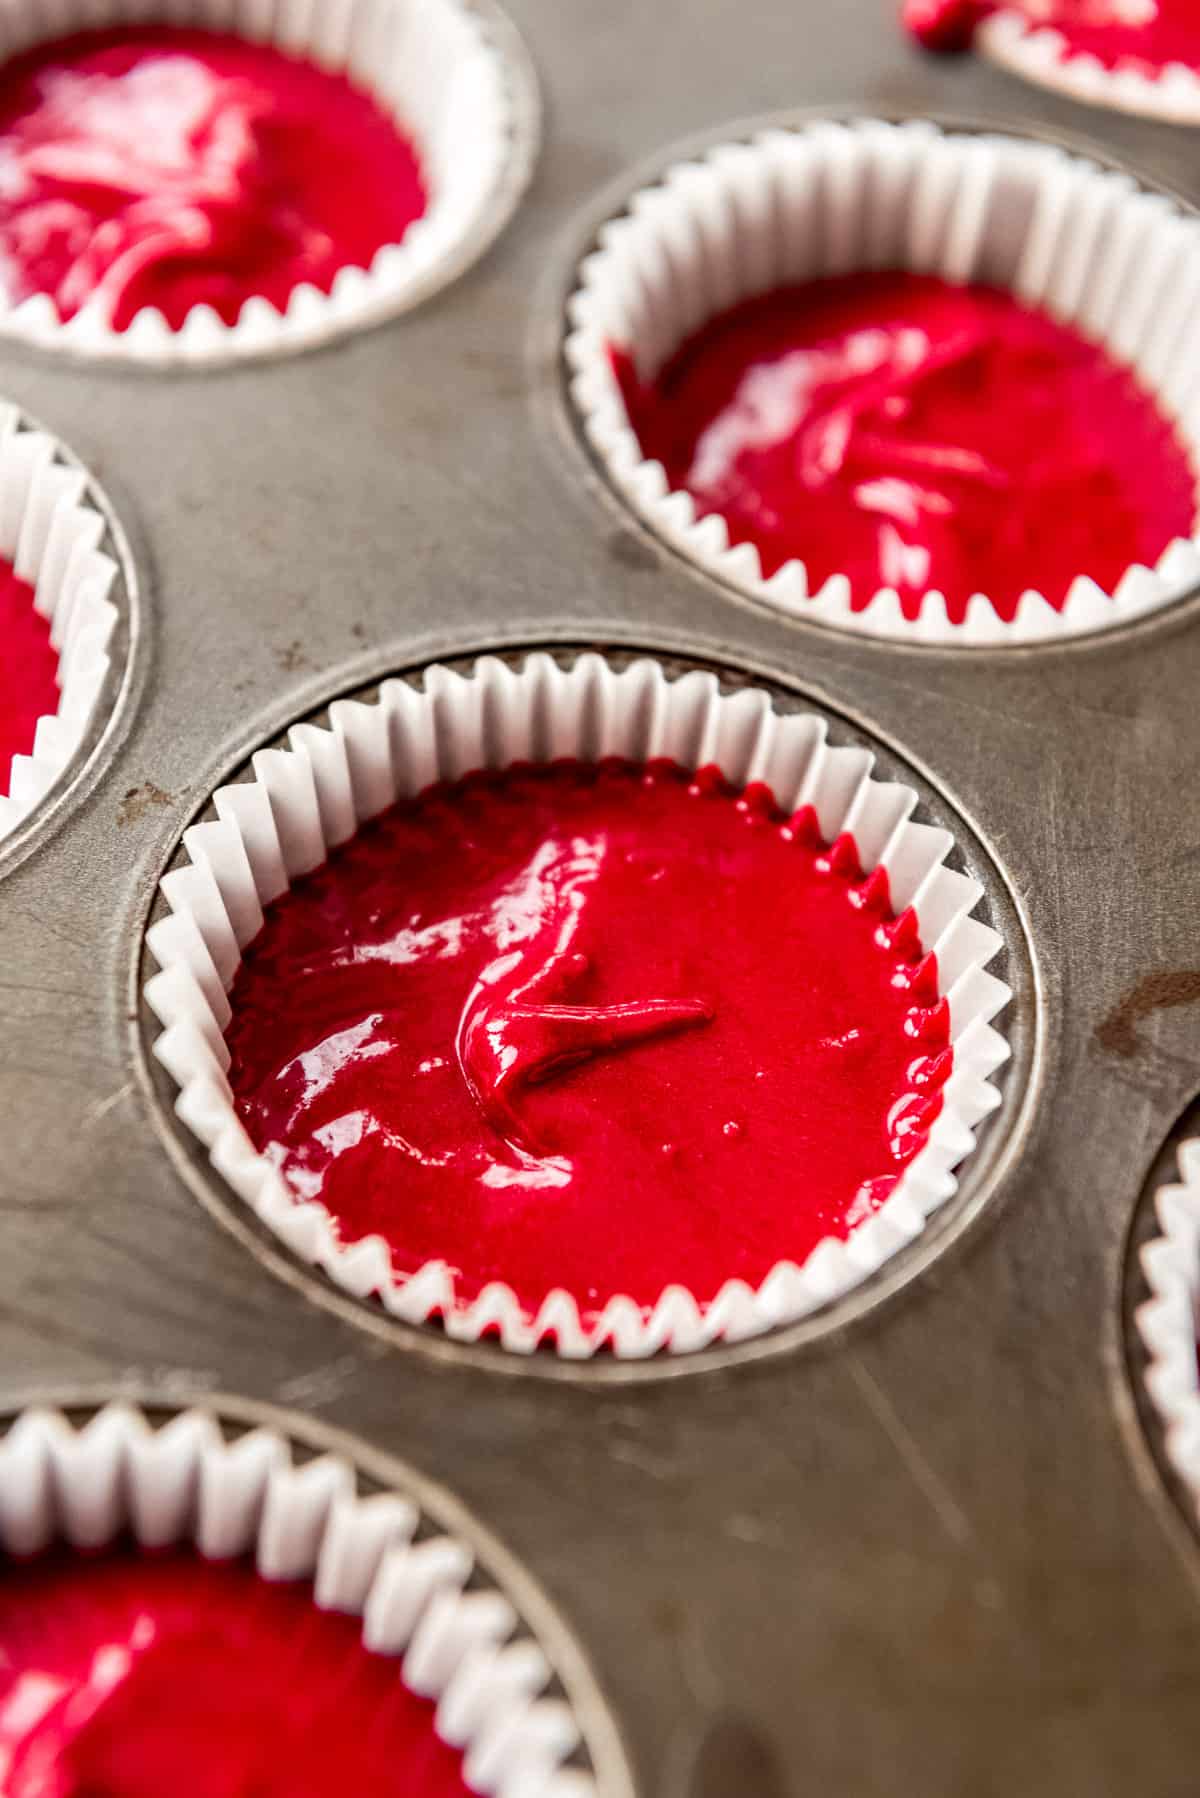 Homemade red velvet cake batter in cupcake liner in tray, ready to bake.